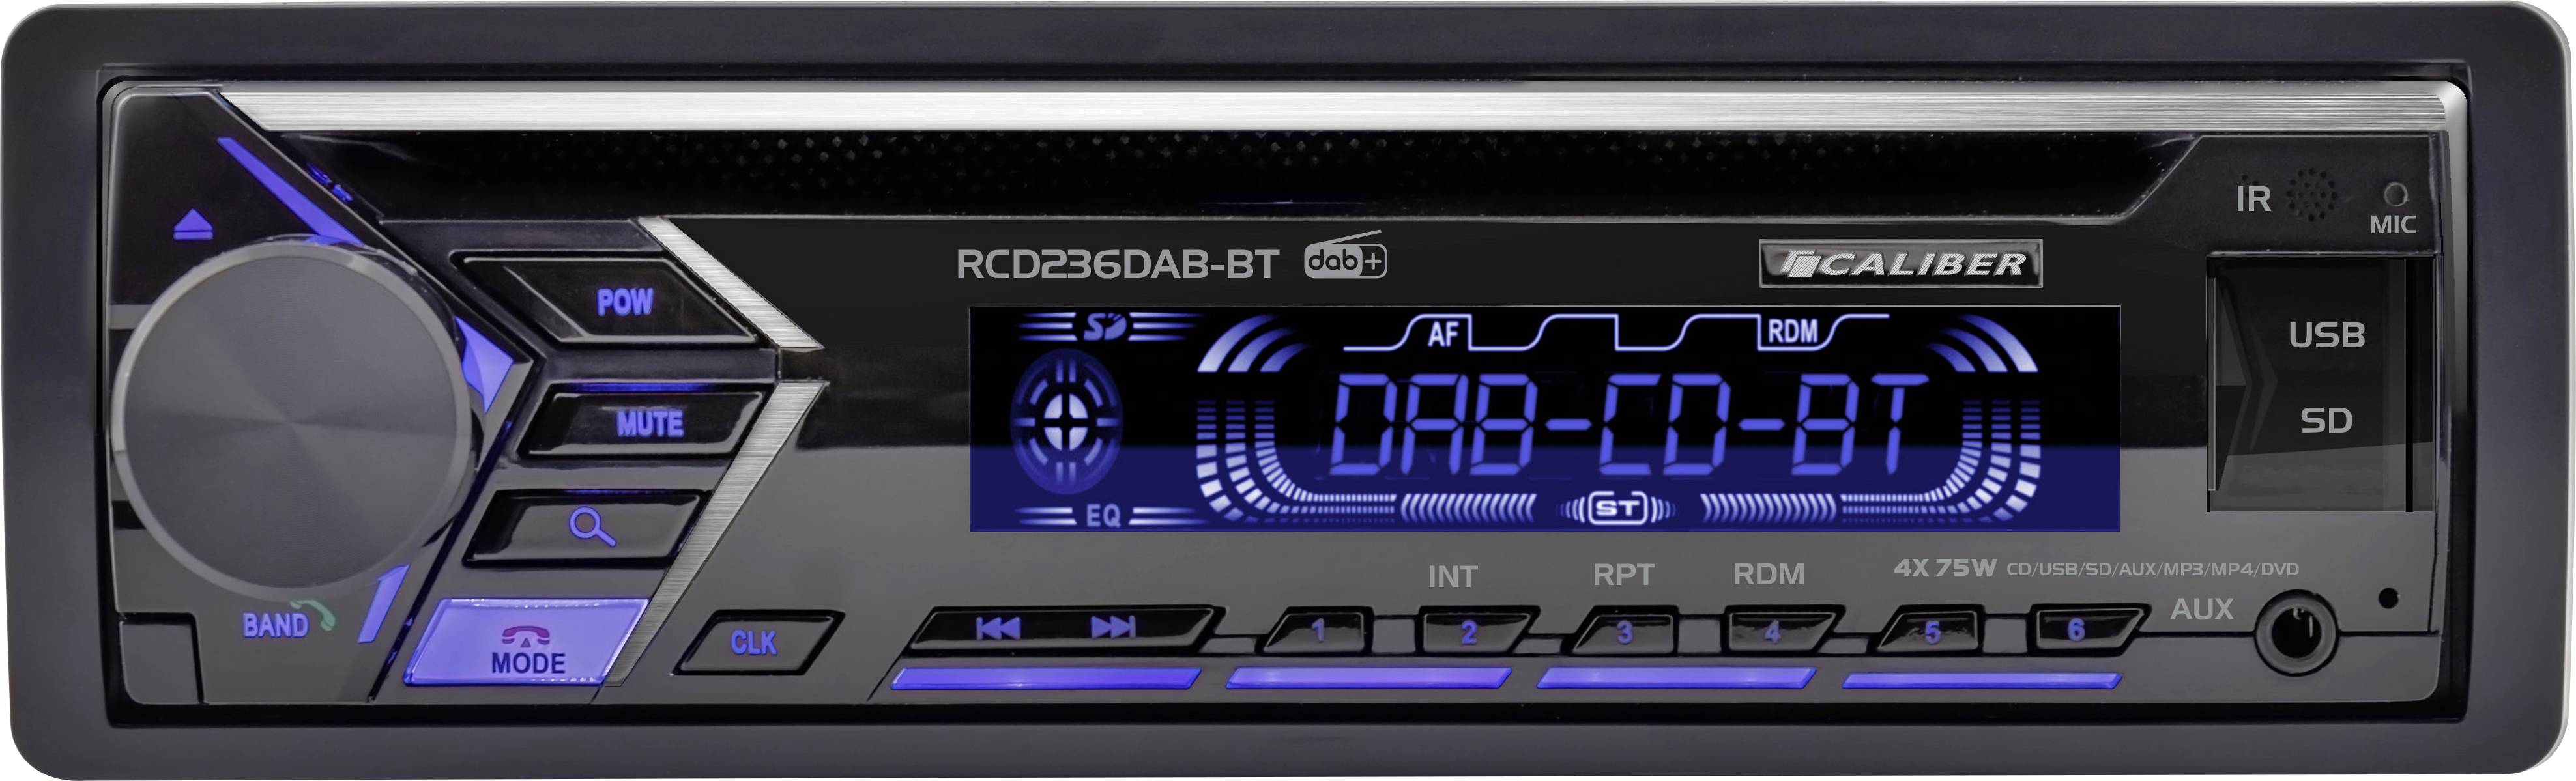 Caliber RMD056DAB-BT Autoradio DAB+ Tuner, Bluetooth®-Freisprecheinrichtung,  inkl. Fernbedienung